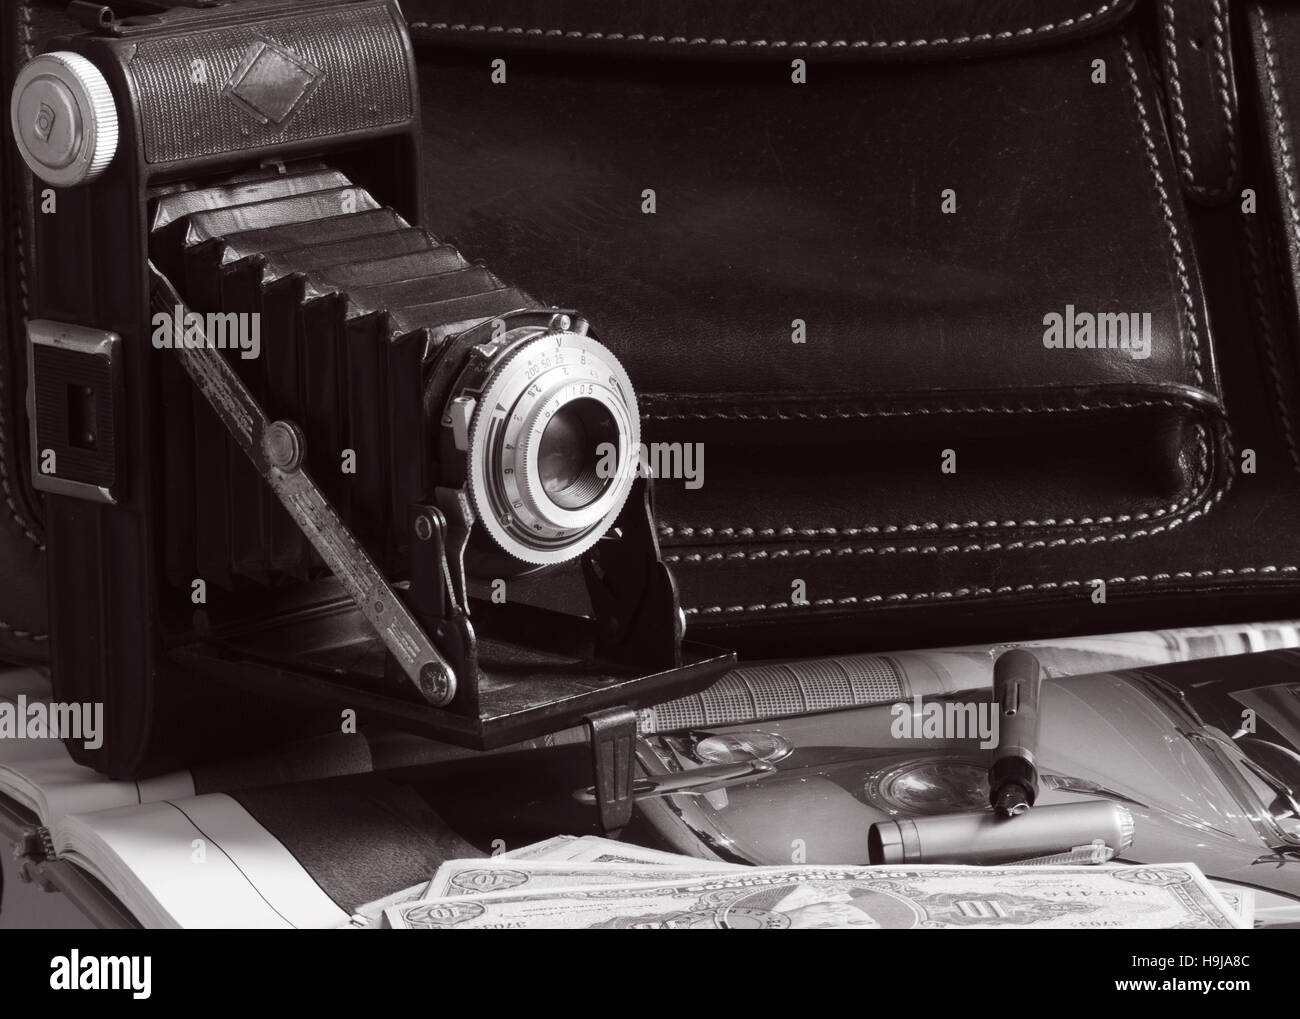 Vintage-Kamera, Leder Aktentasche, Stift und Geld über Auto Bild, alle aus der fünfziger Jahre Ära Stockfoto